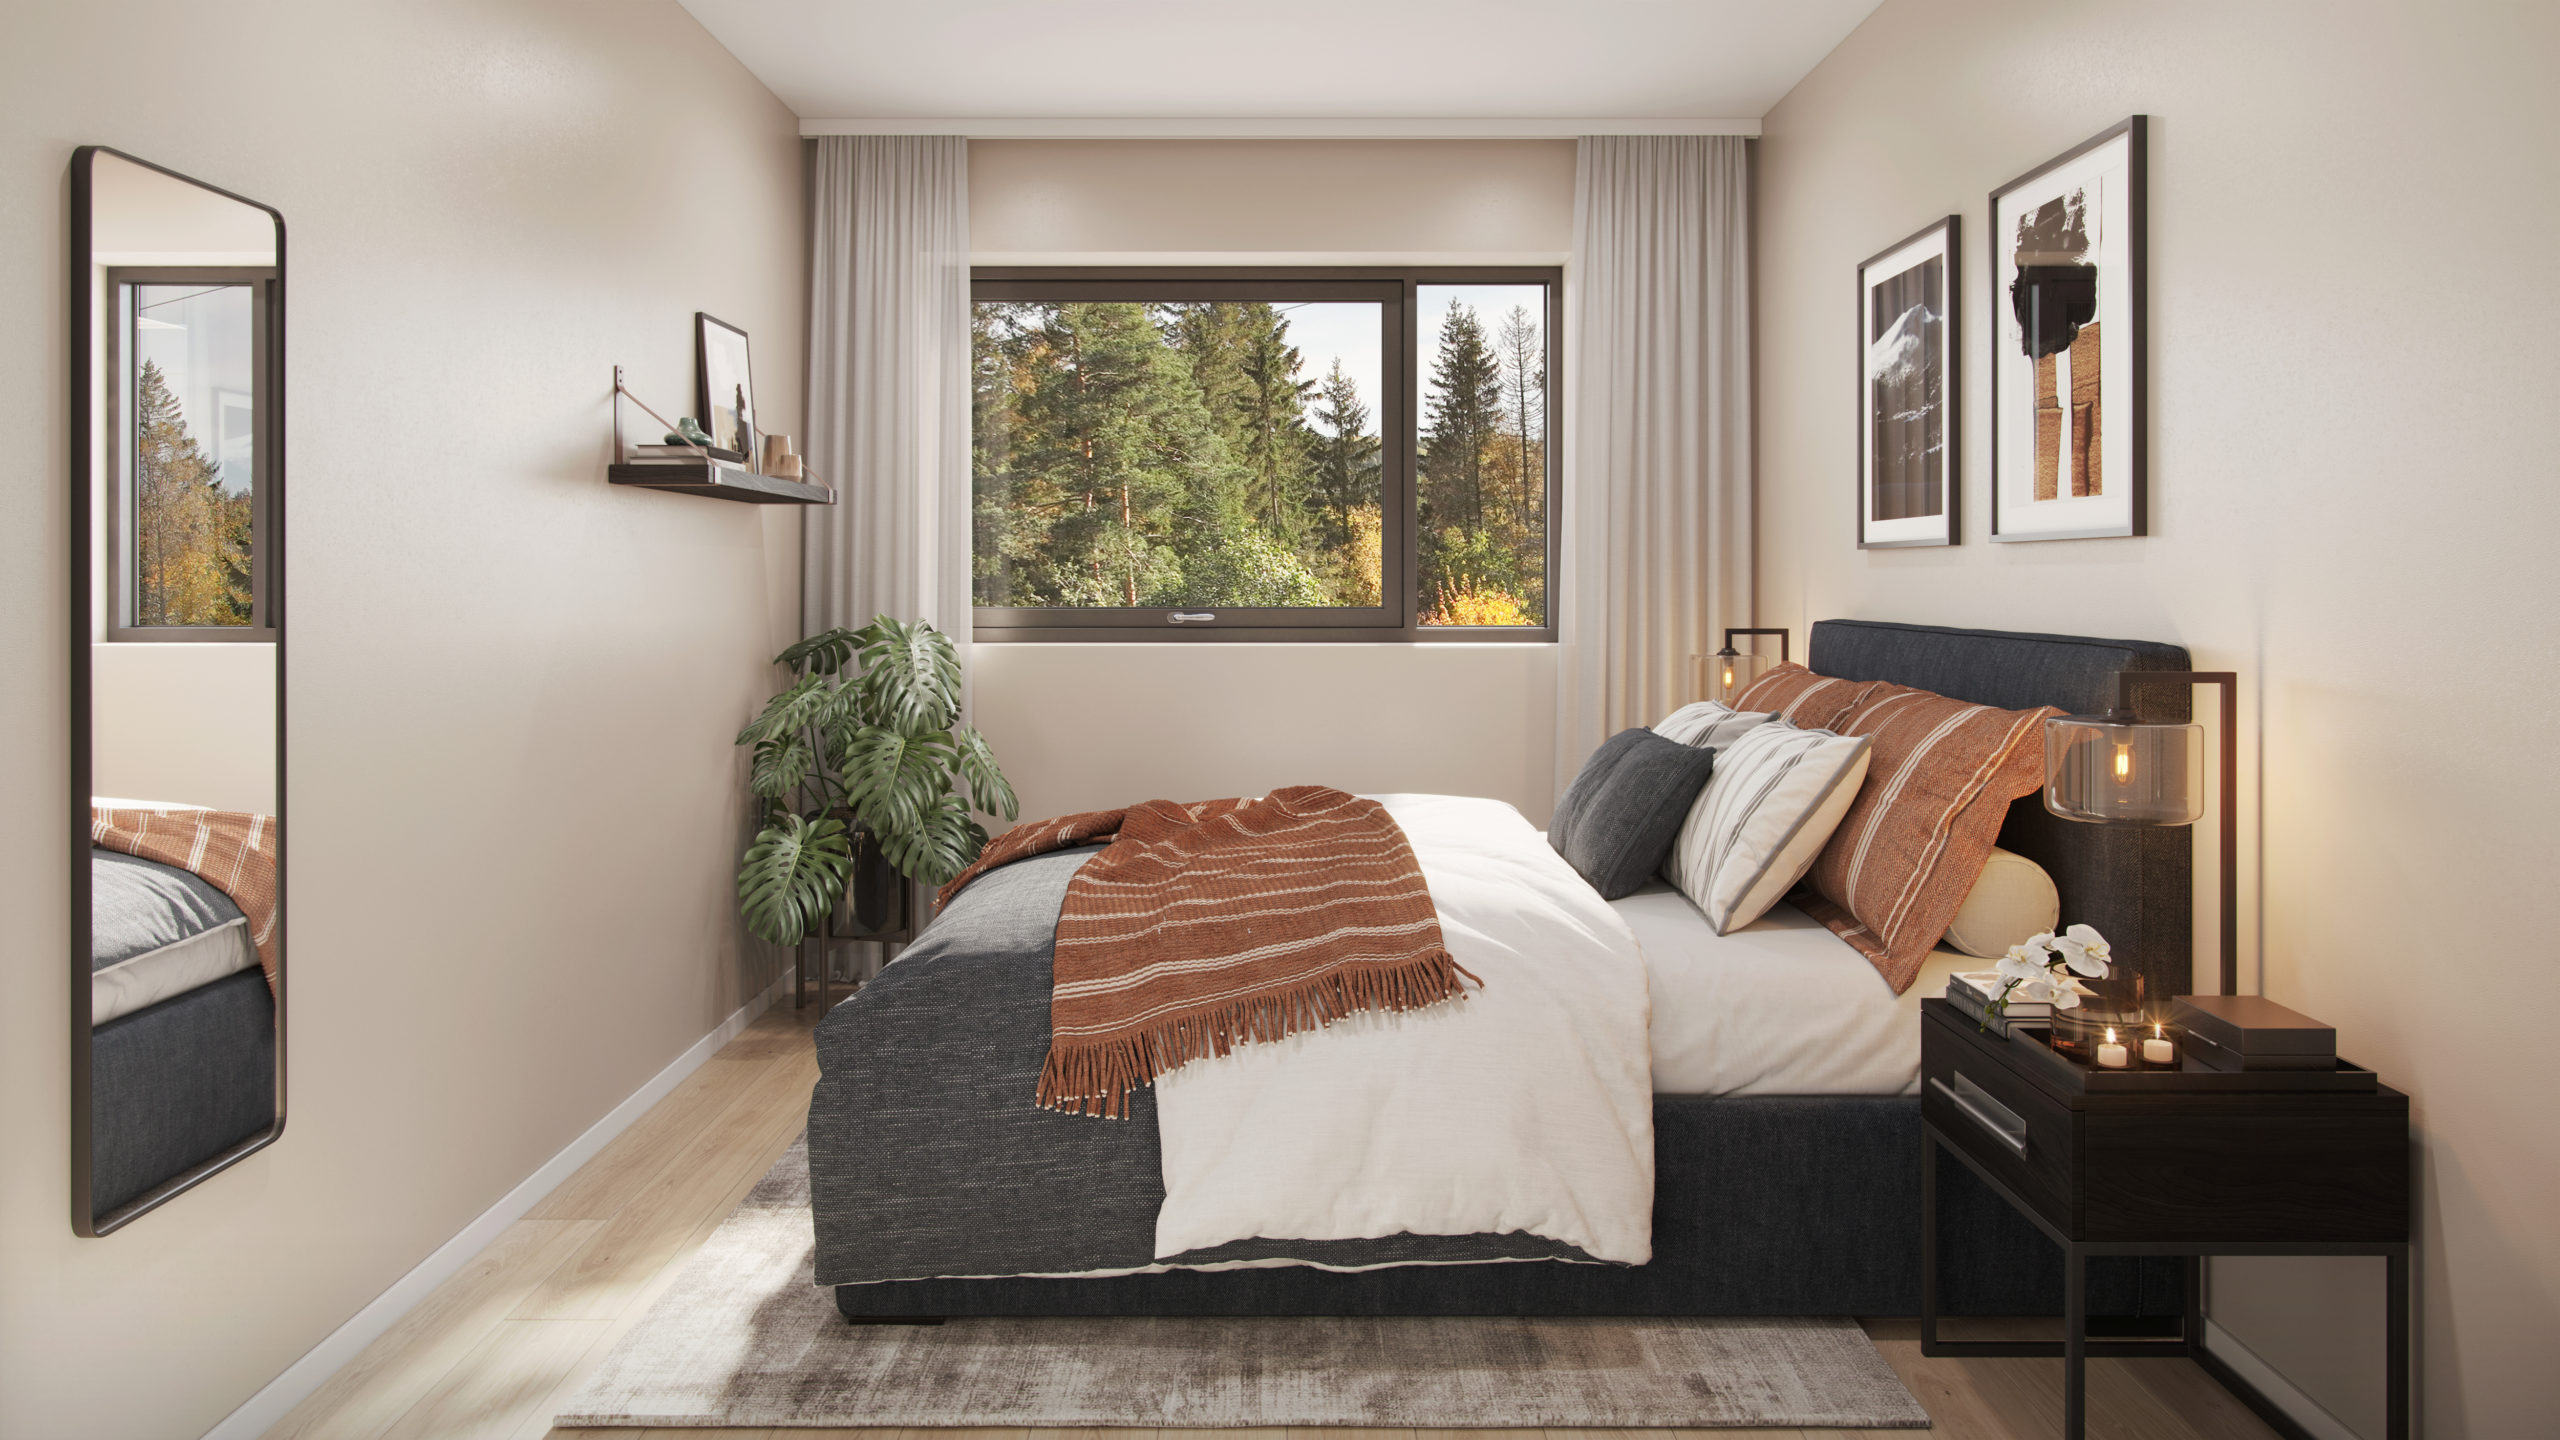 Soverom med stort vindu og fin utsikt - krav til størrelse på vindu for rømning - utsyn og sollys